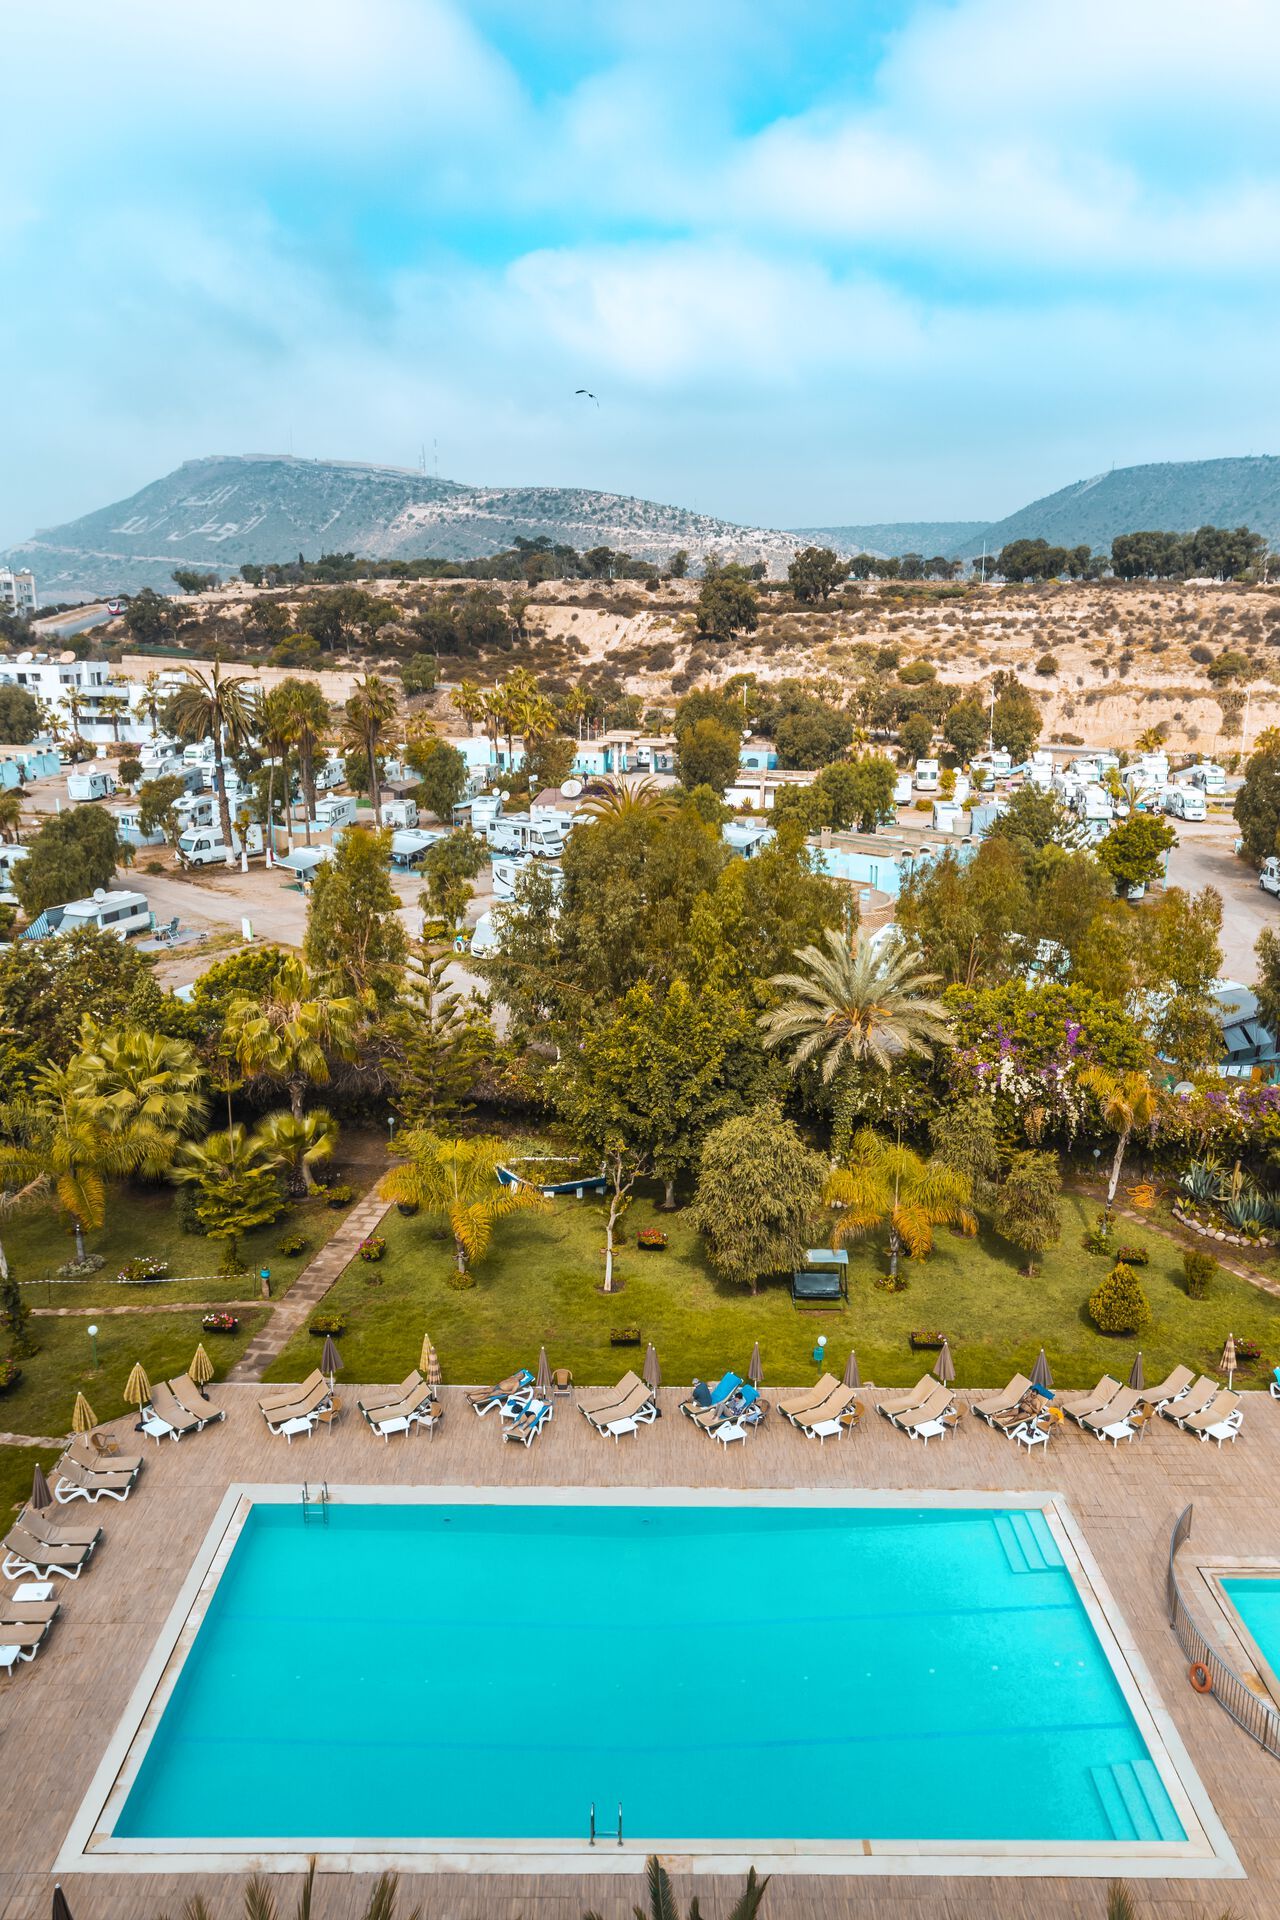 Maroc - Agadir - Hotel Tildi 4*